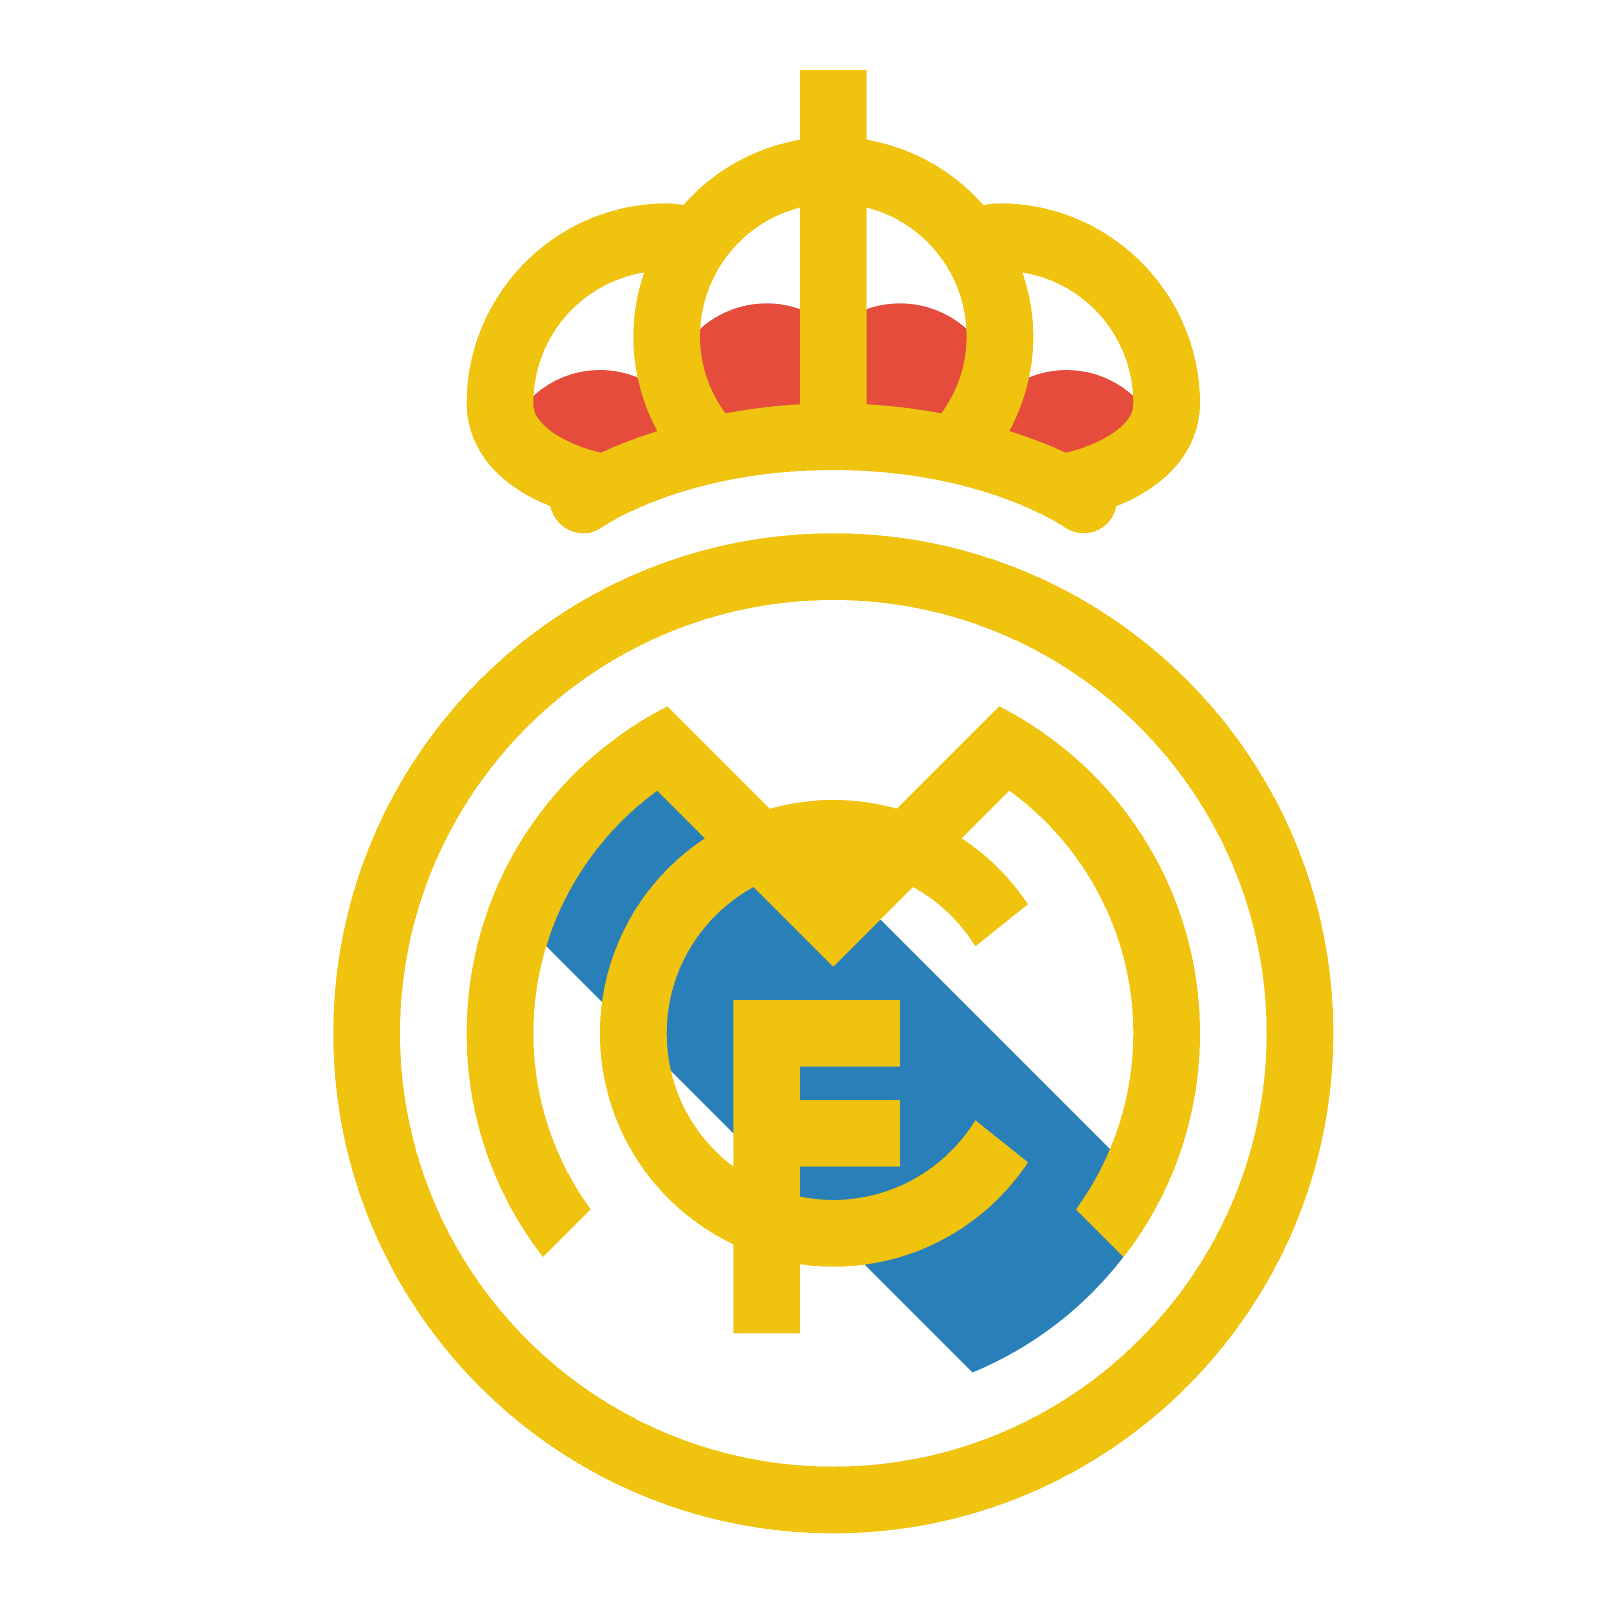 Футбольный клуб Реал Мадрид лого. Реал Мадрид герб футбольного клуба. Футбольный клуб Реал Мадрид PNG. Реал Мадрид логотип на прозрачном фоне.